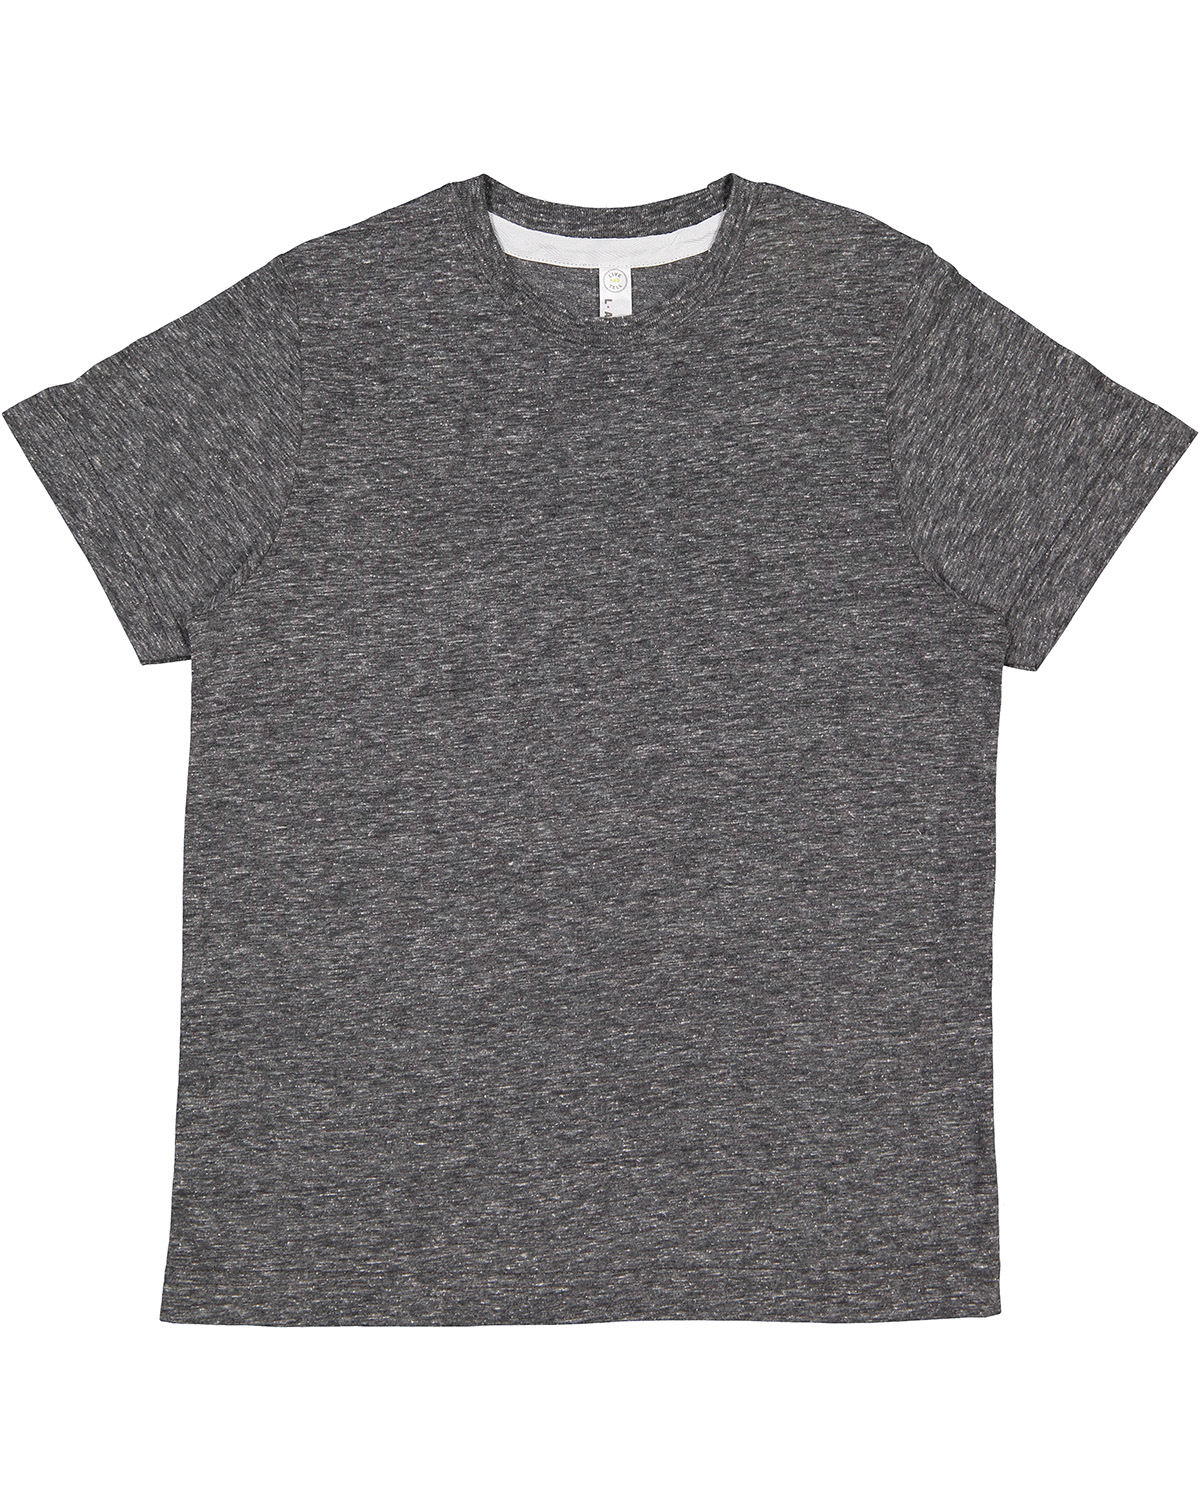 LAT 6191 Youth Harborside Melange Jersey T-Shirt - Smoke Melange - Xs